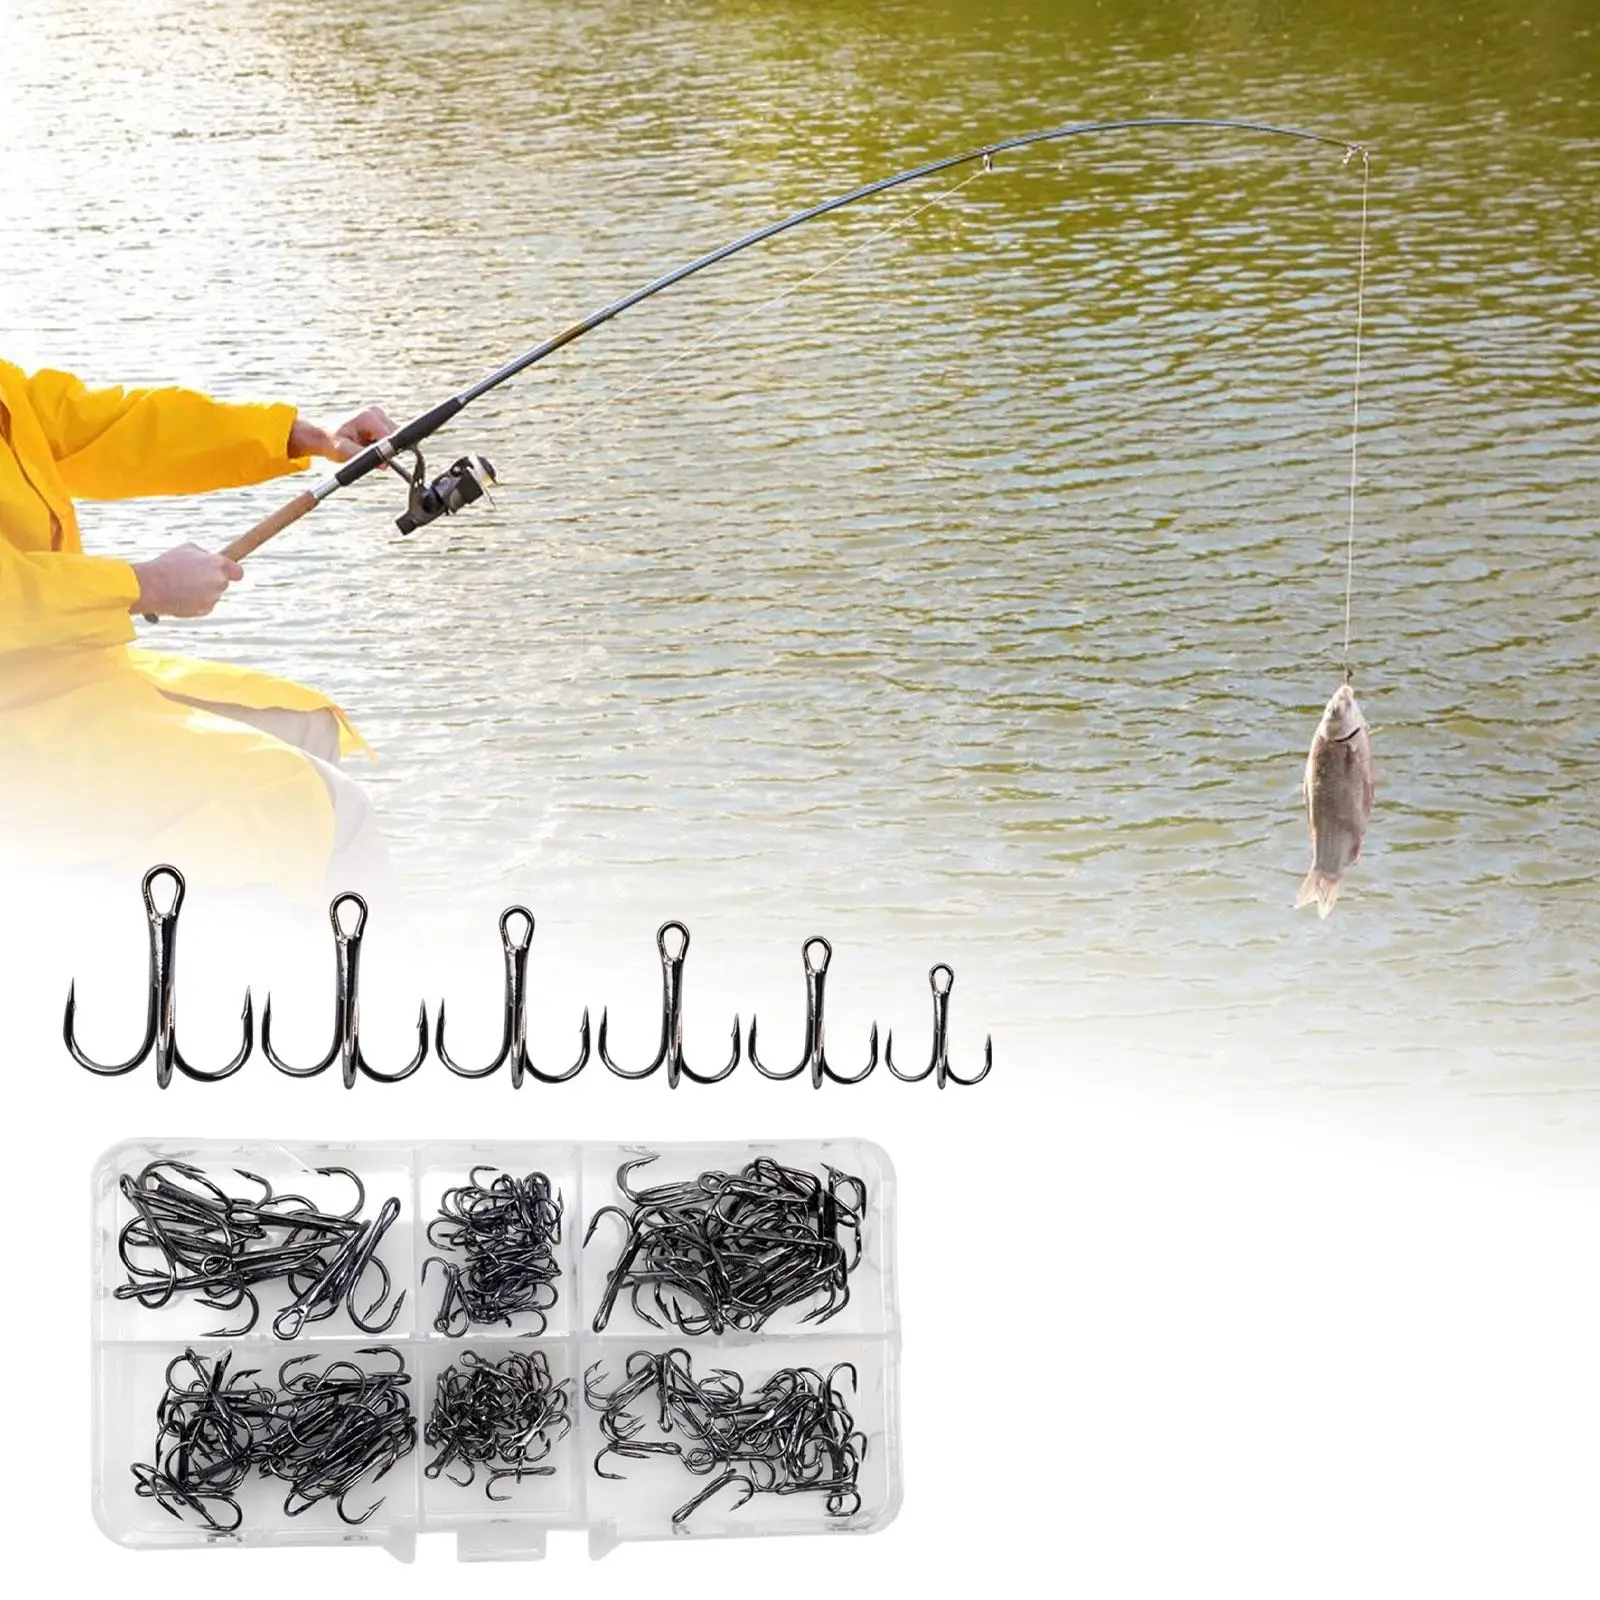 110x Treble Hooks Round Bent Gear Sharp Portable Fishing Hooks Set